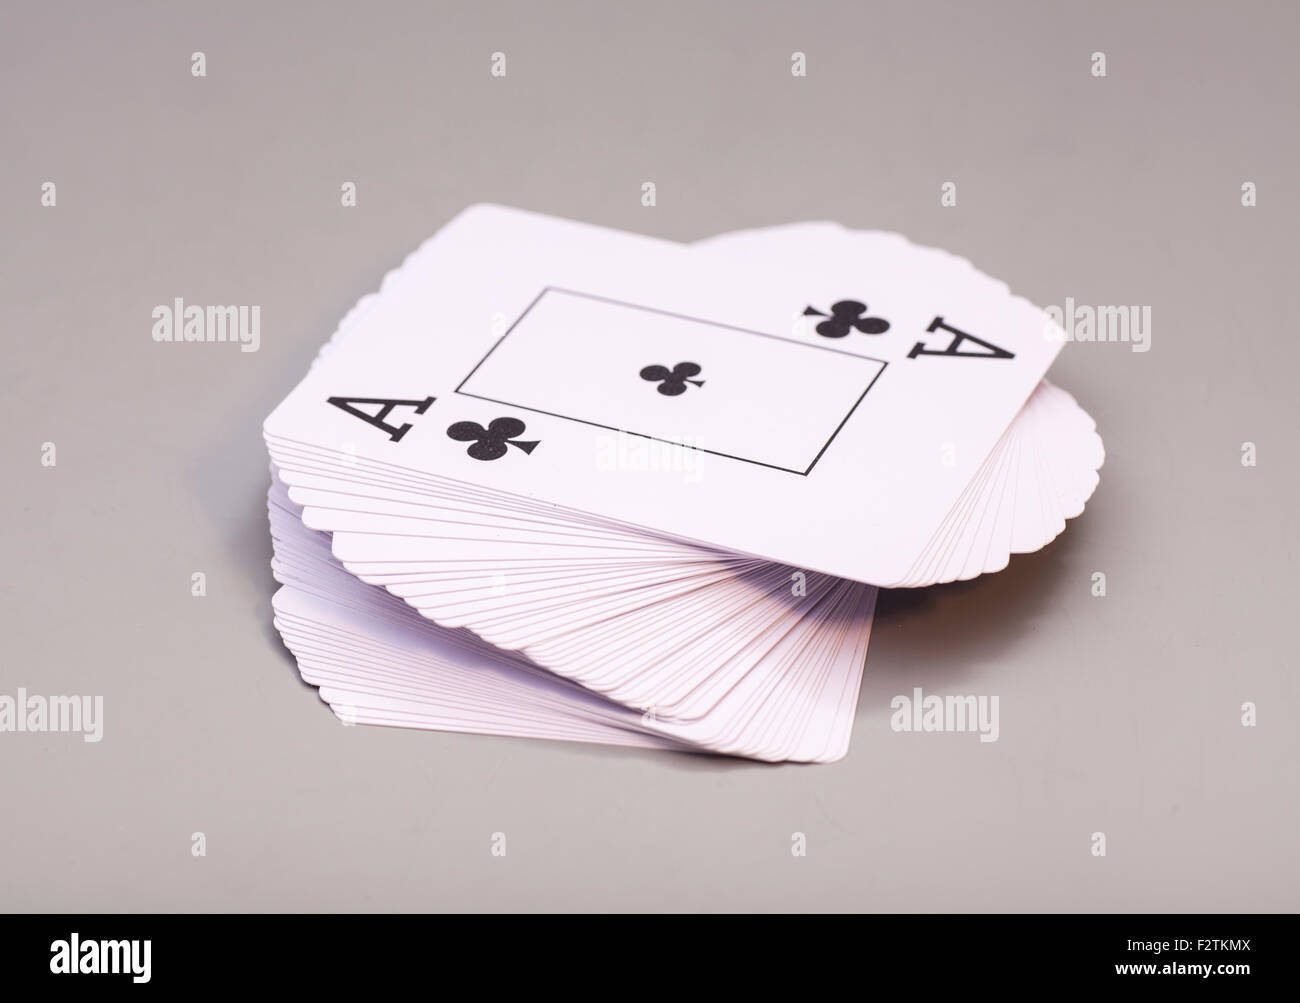 Cartes à jouer avec ace of clubs isolé sur fond gris Banque D'Images